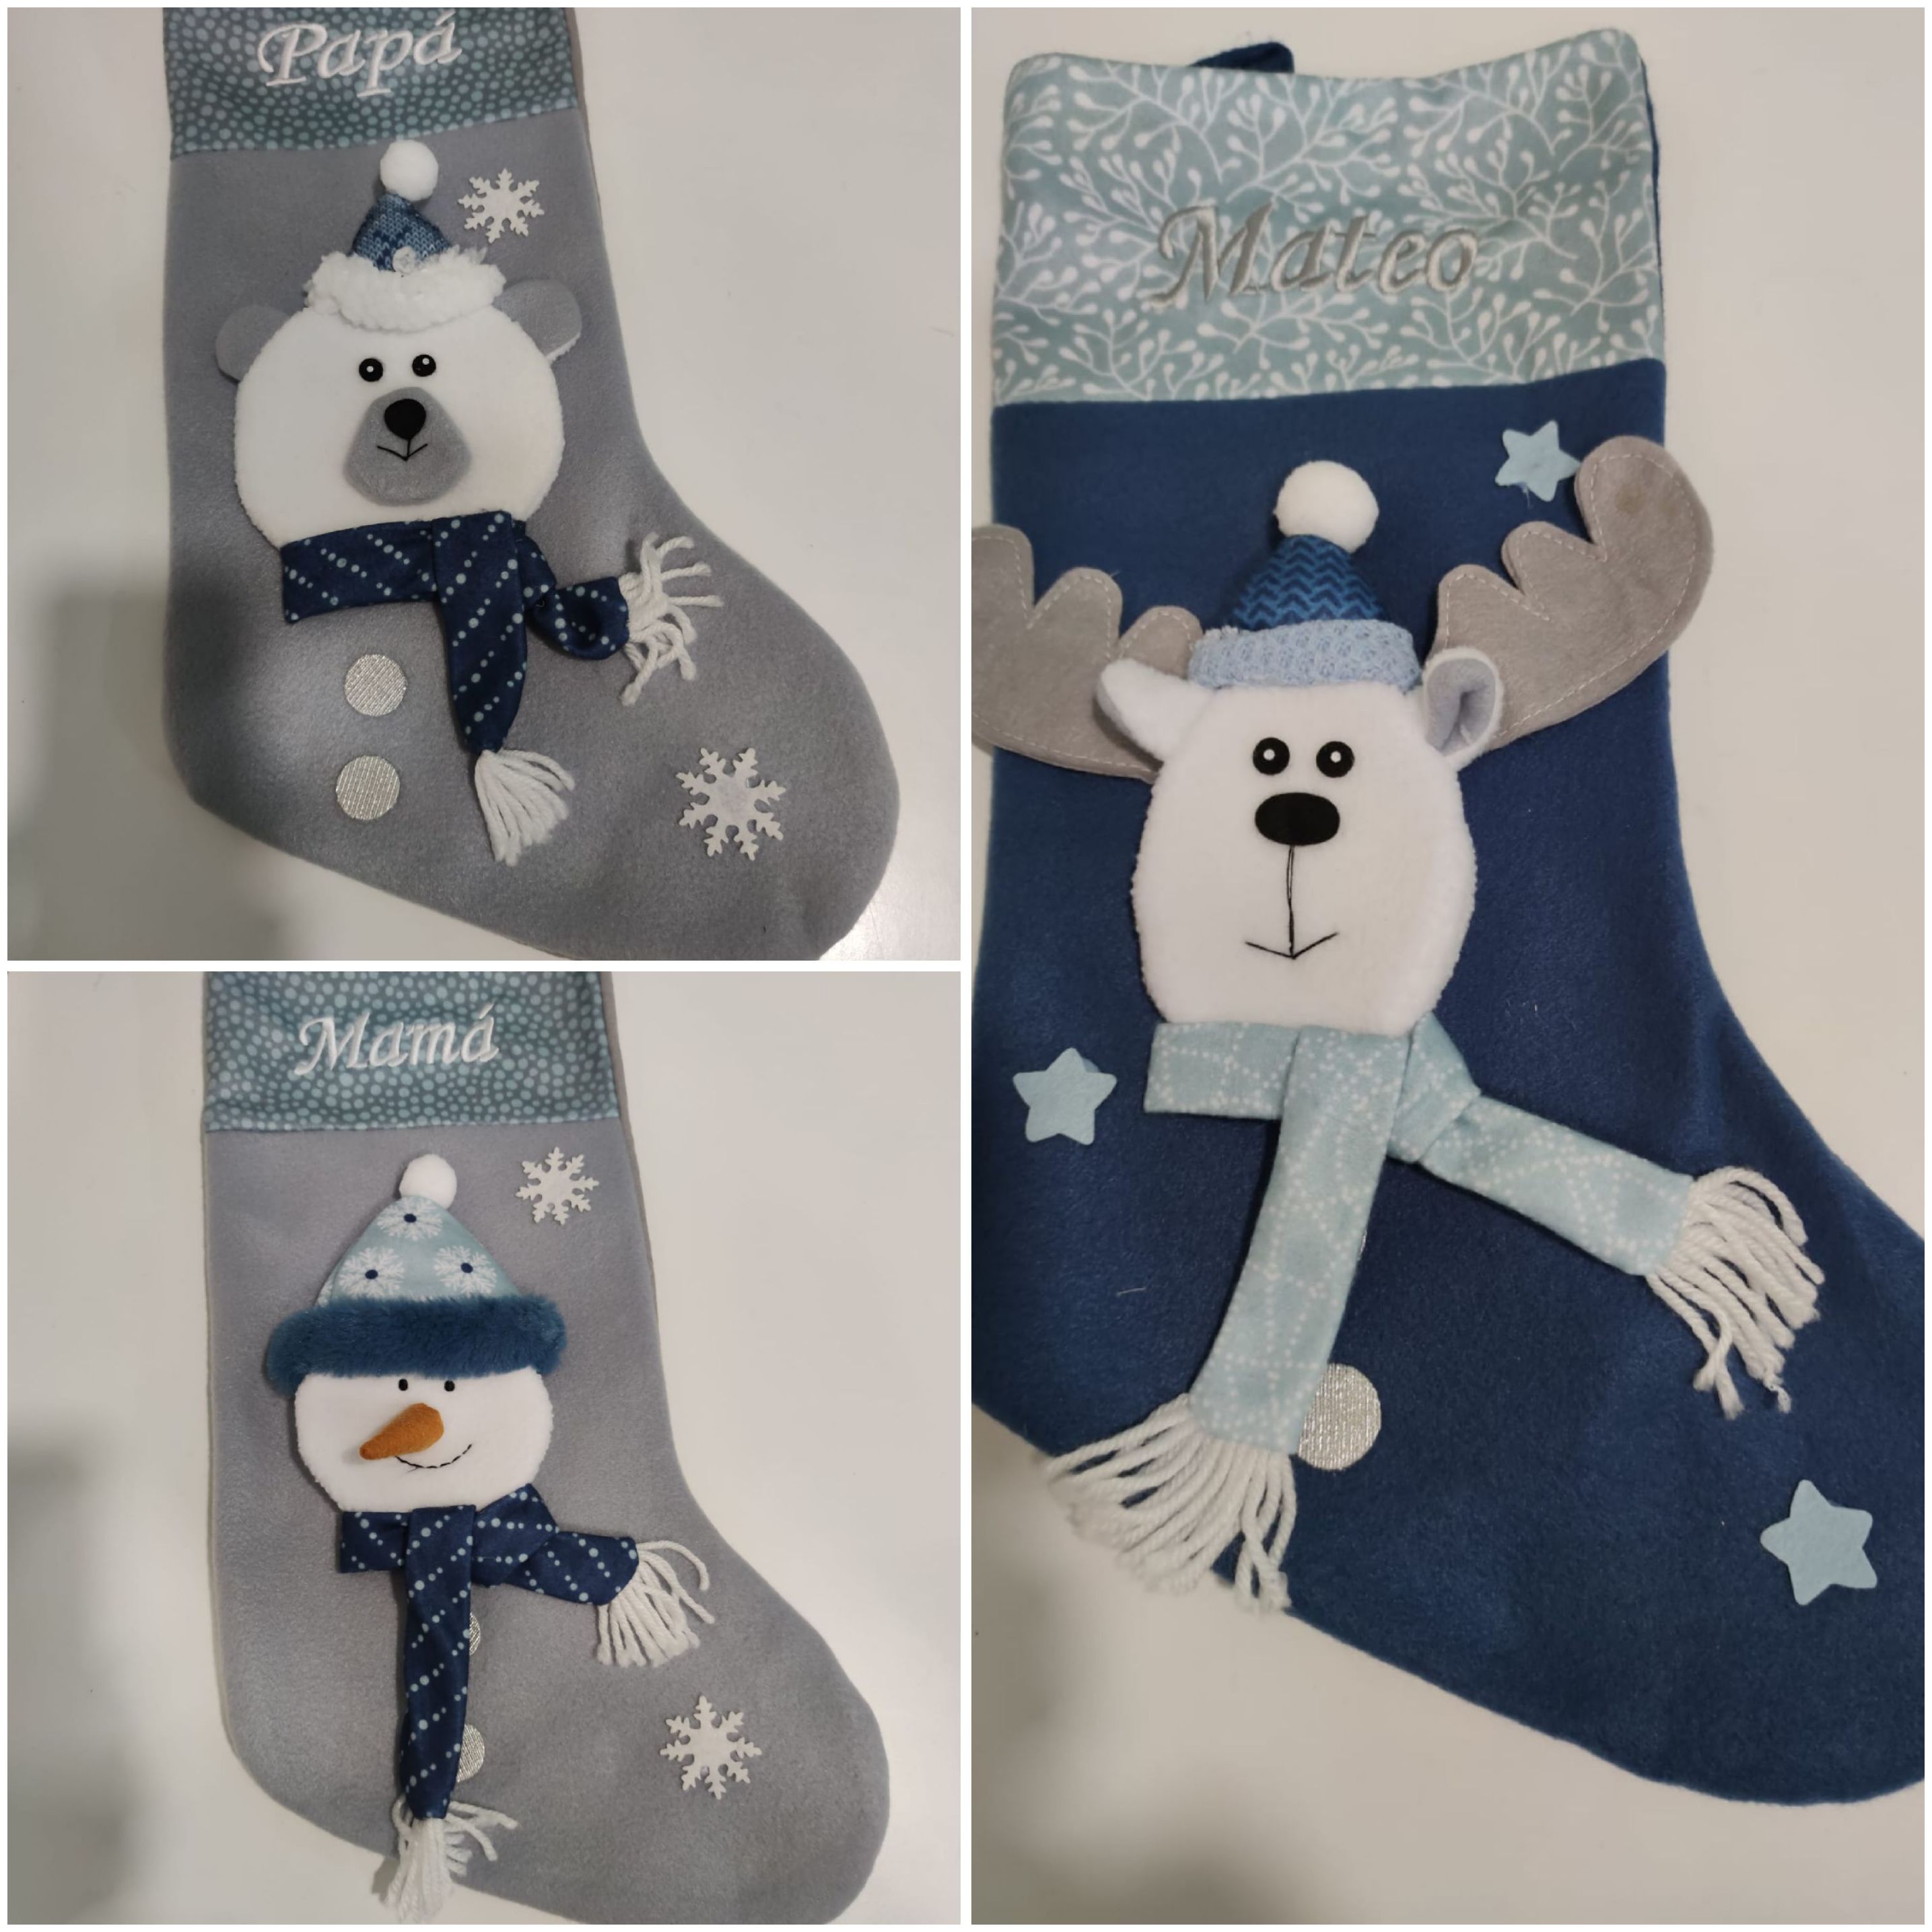 Regala sonrisas con nuestros calcetines navideños!